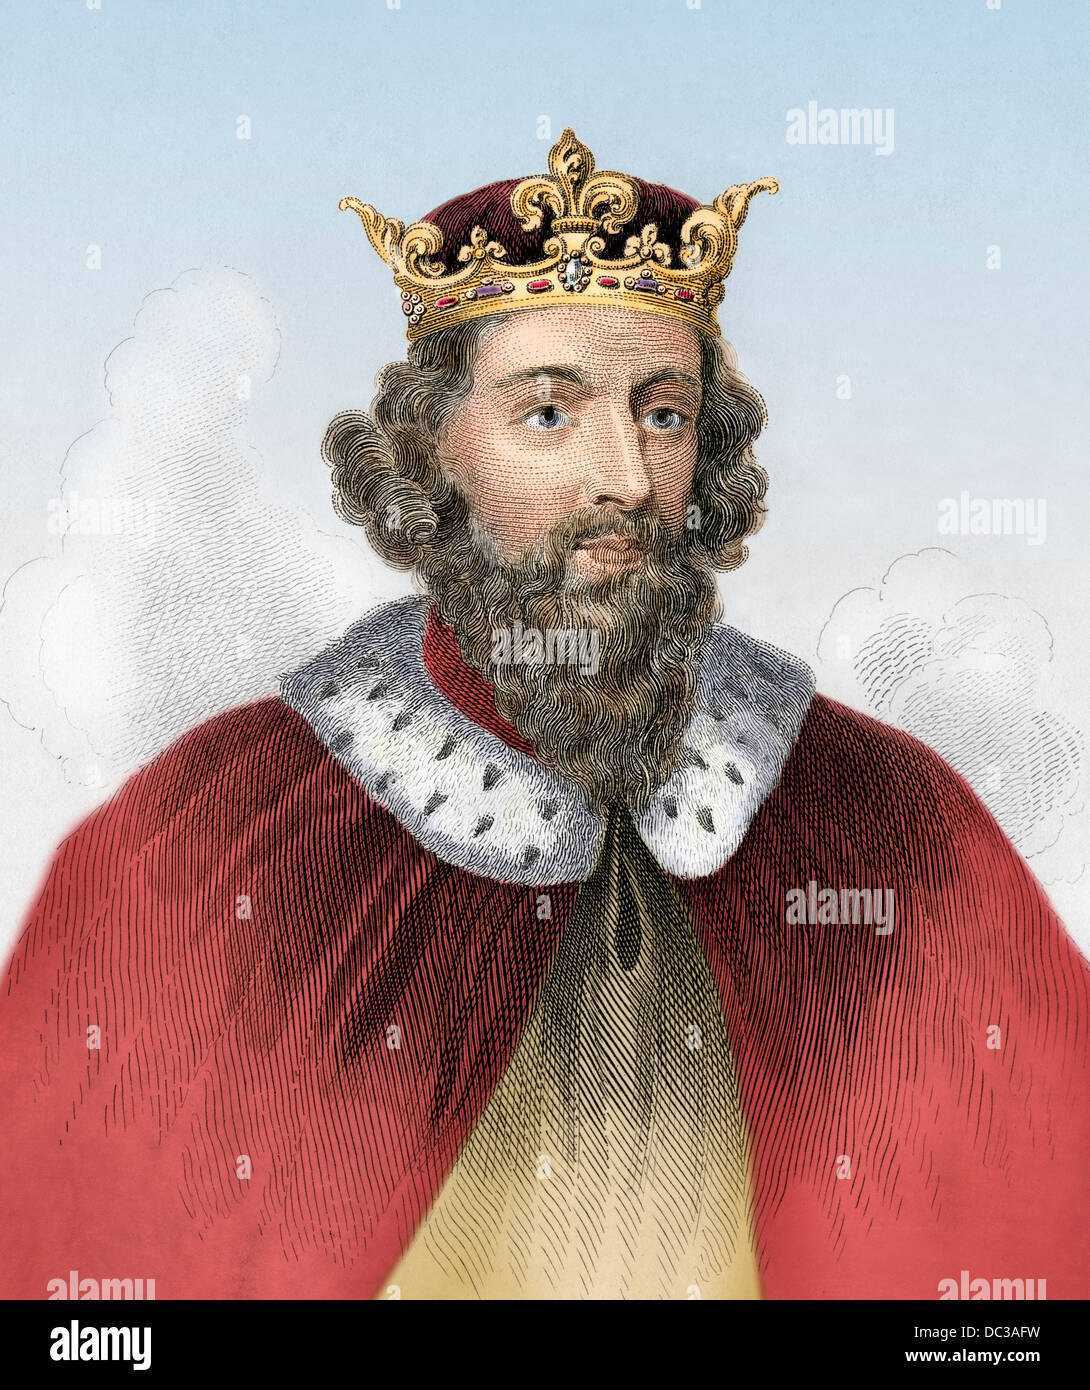 Alfred le Grand, roi de Wessex, A.D. 800s à la main, gravure sur bois Banque D'Images